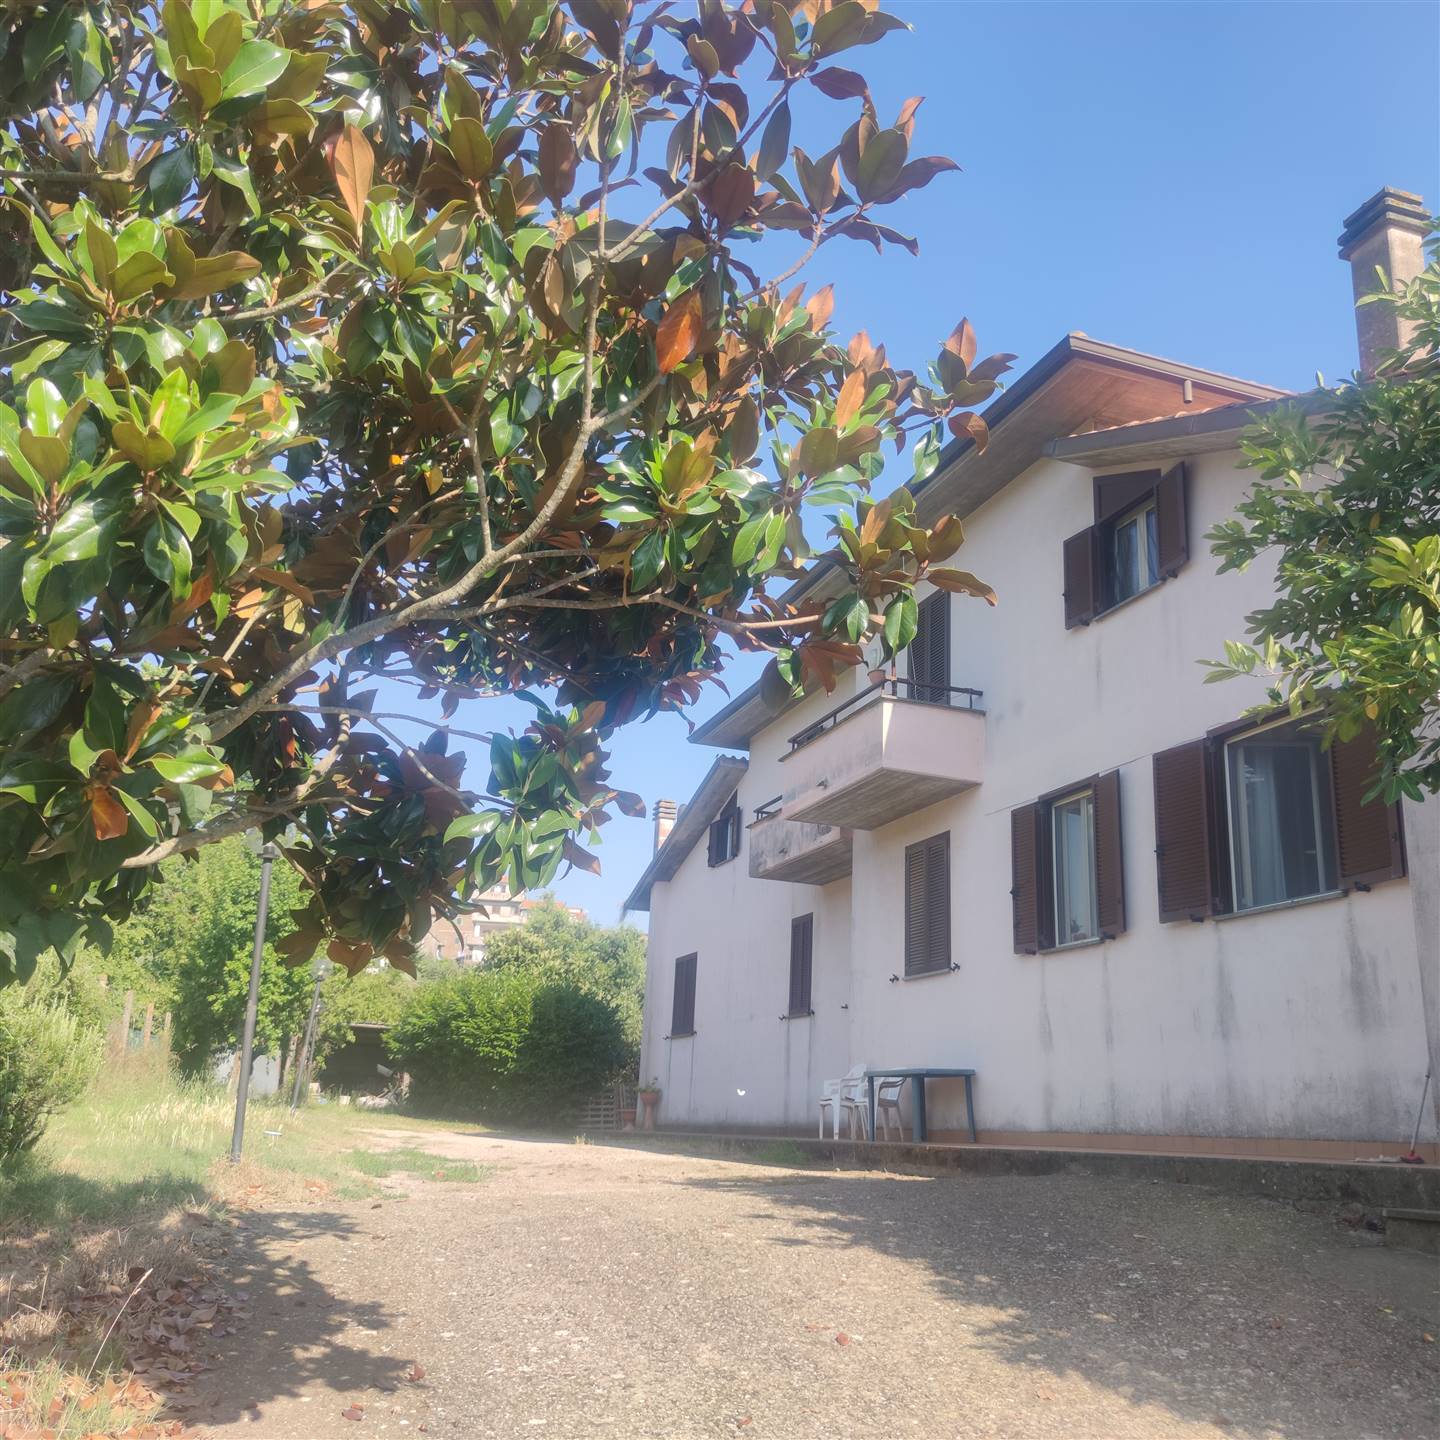 Villa Bifamiliare in vendita a Montefiascone, 6 locali, zona onami, prezzo € 160.000 | PortaleAgenzieImmobiliari.it